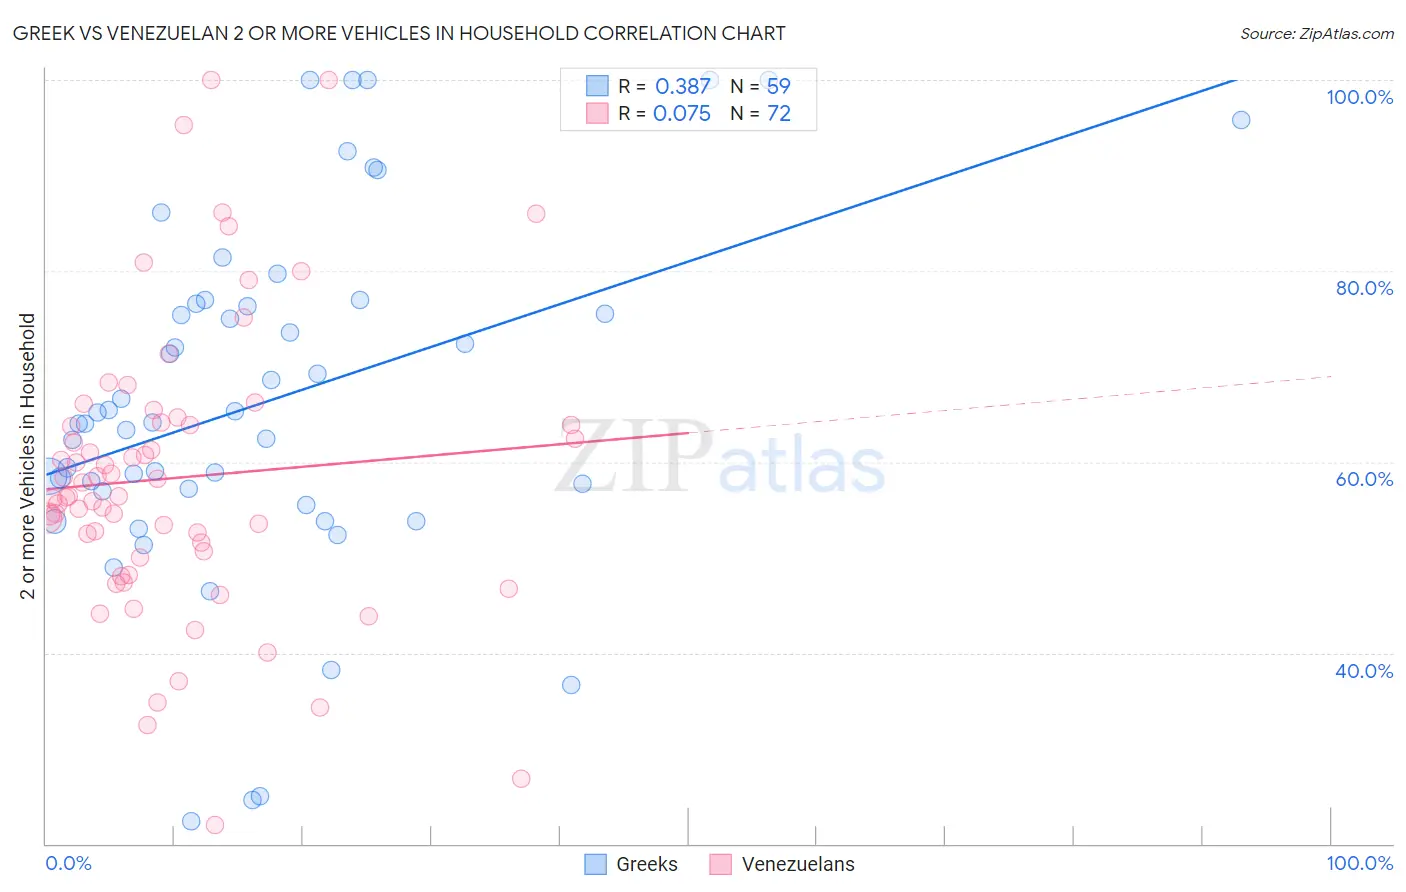 Greek vs Venezuelan 2 or more Vehicles in Household